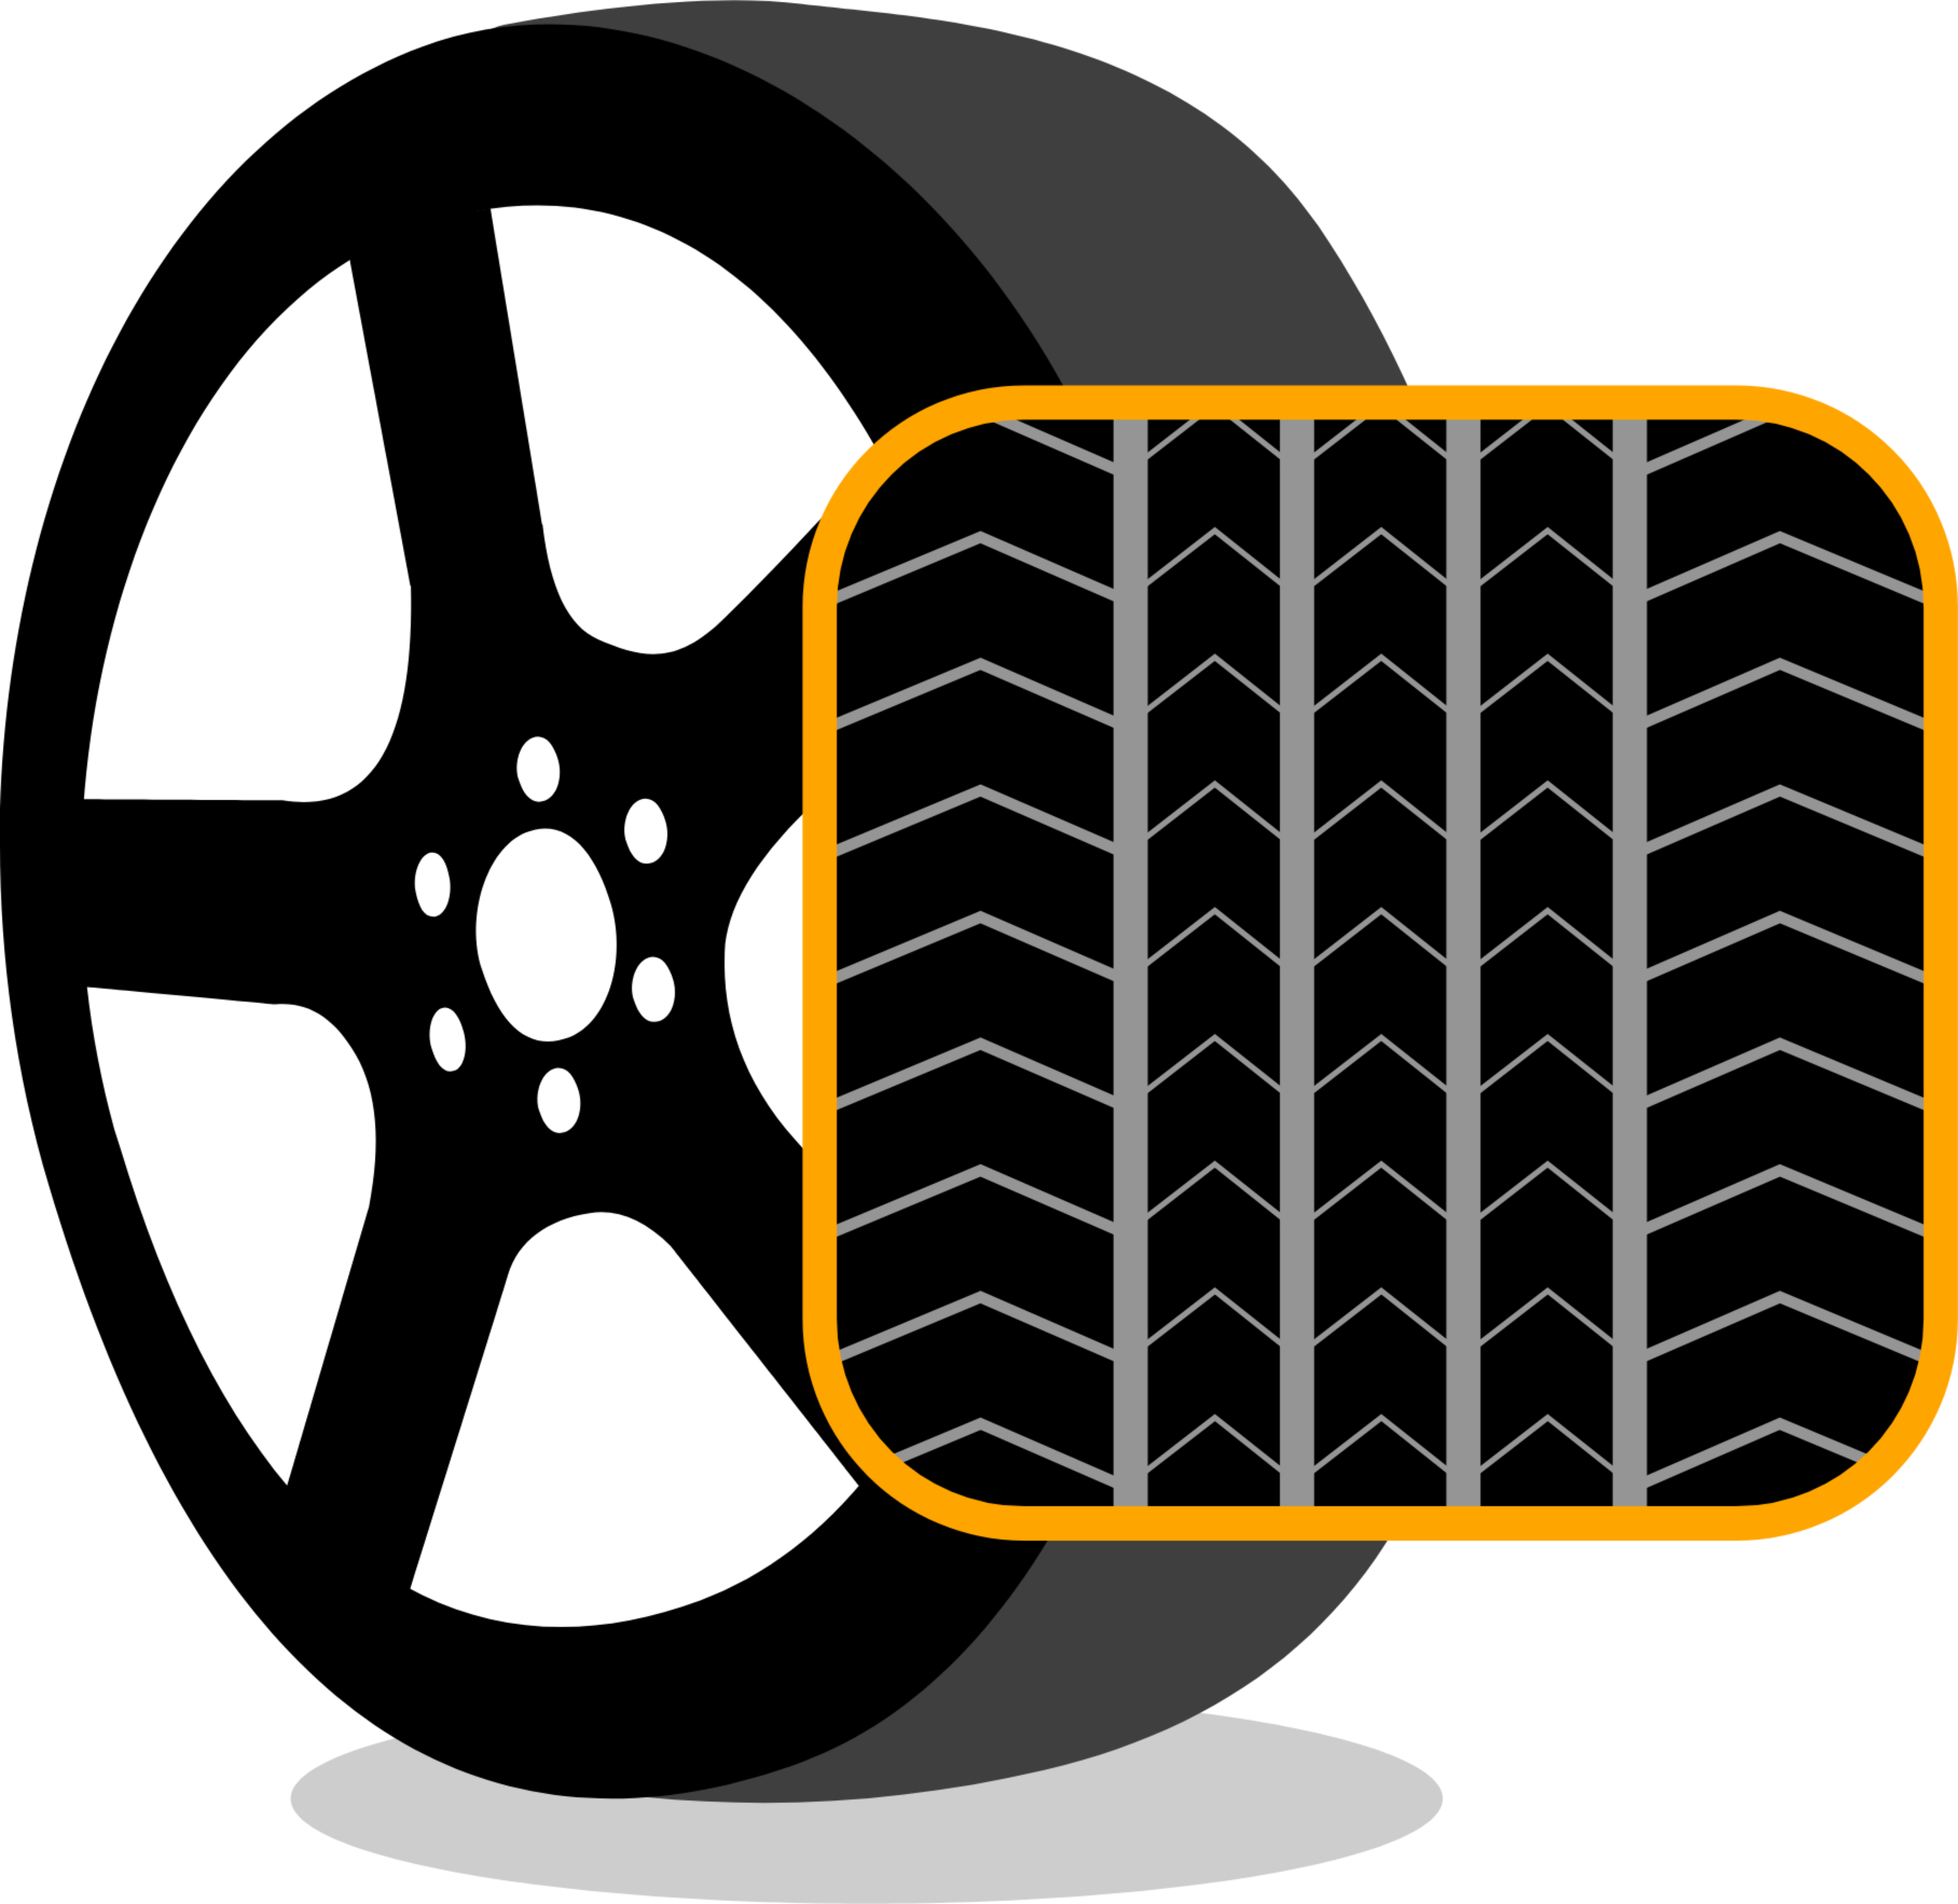 자동차 타이어의 방향성 패턴을 보여주는 그래픽.